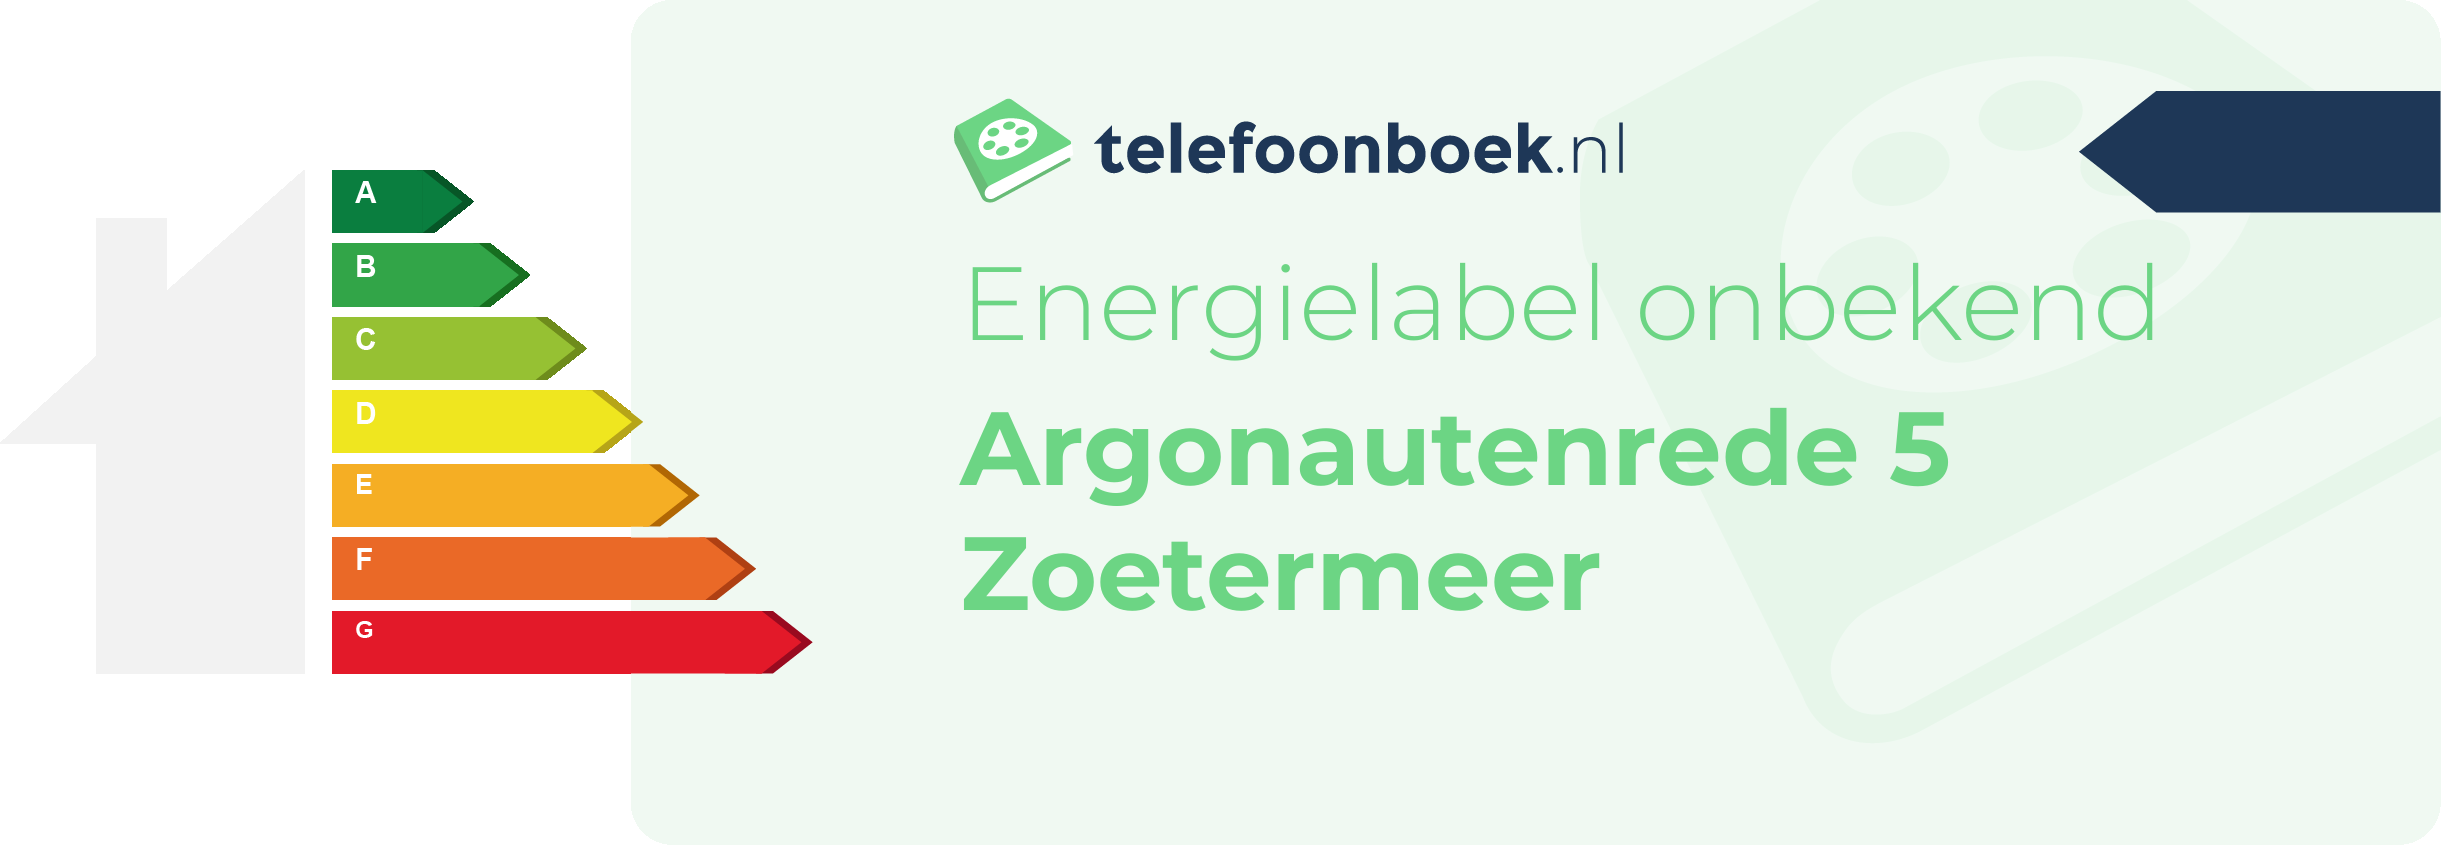 Energielabel Argonautenrede 5 Zoetermeer